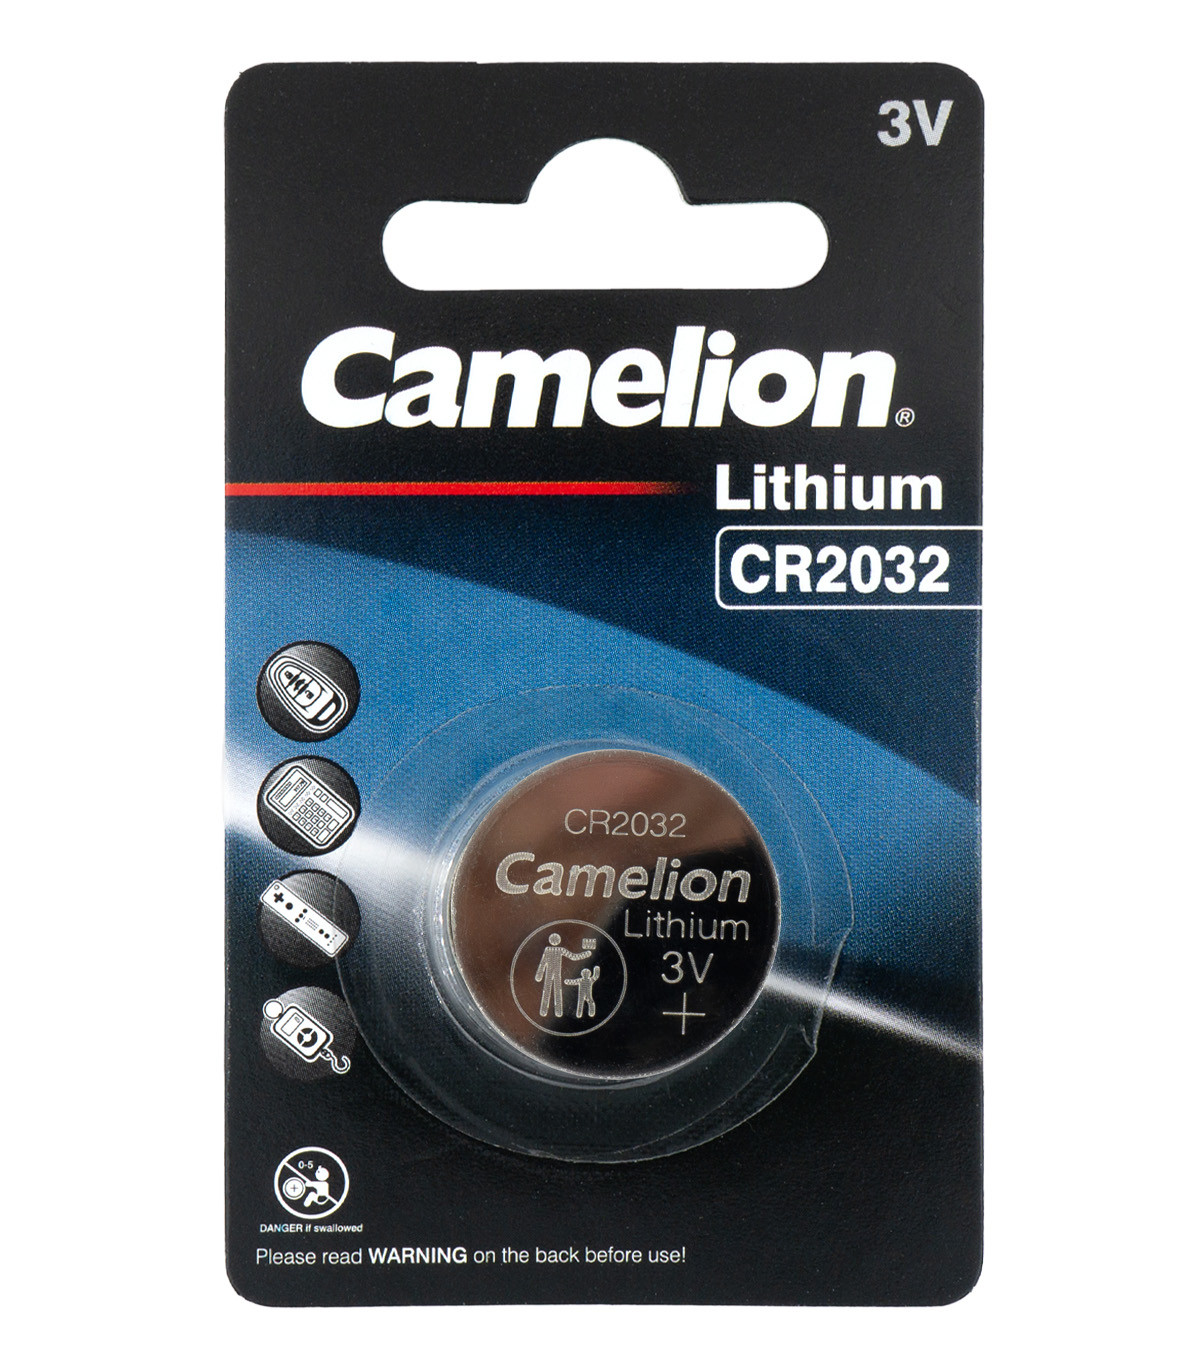 Camelion - CR2032 Pile Lithium 3V - Boite de 10 blisters Camélion - Pile  ronde bouton 220 - 225 maH